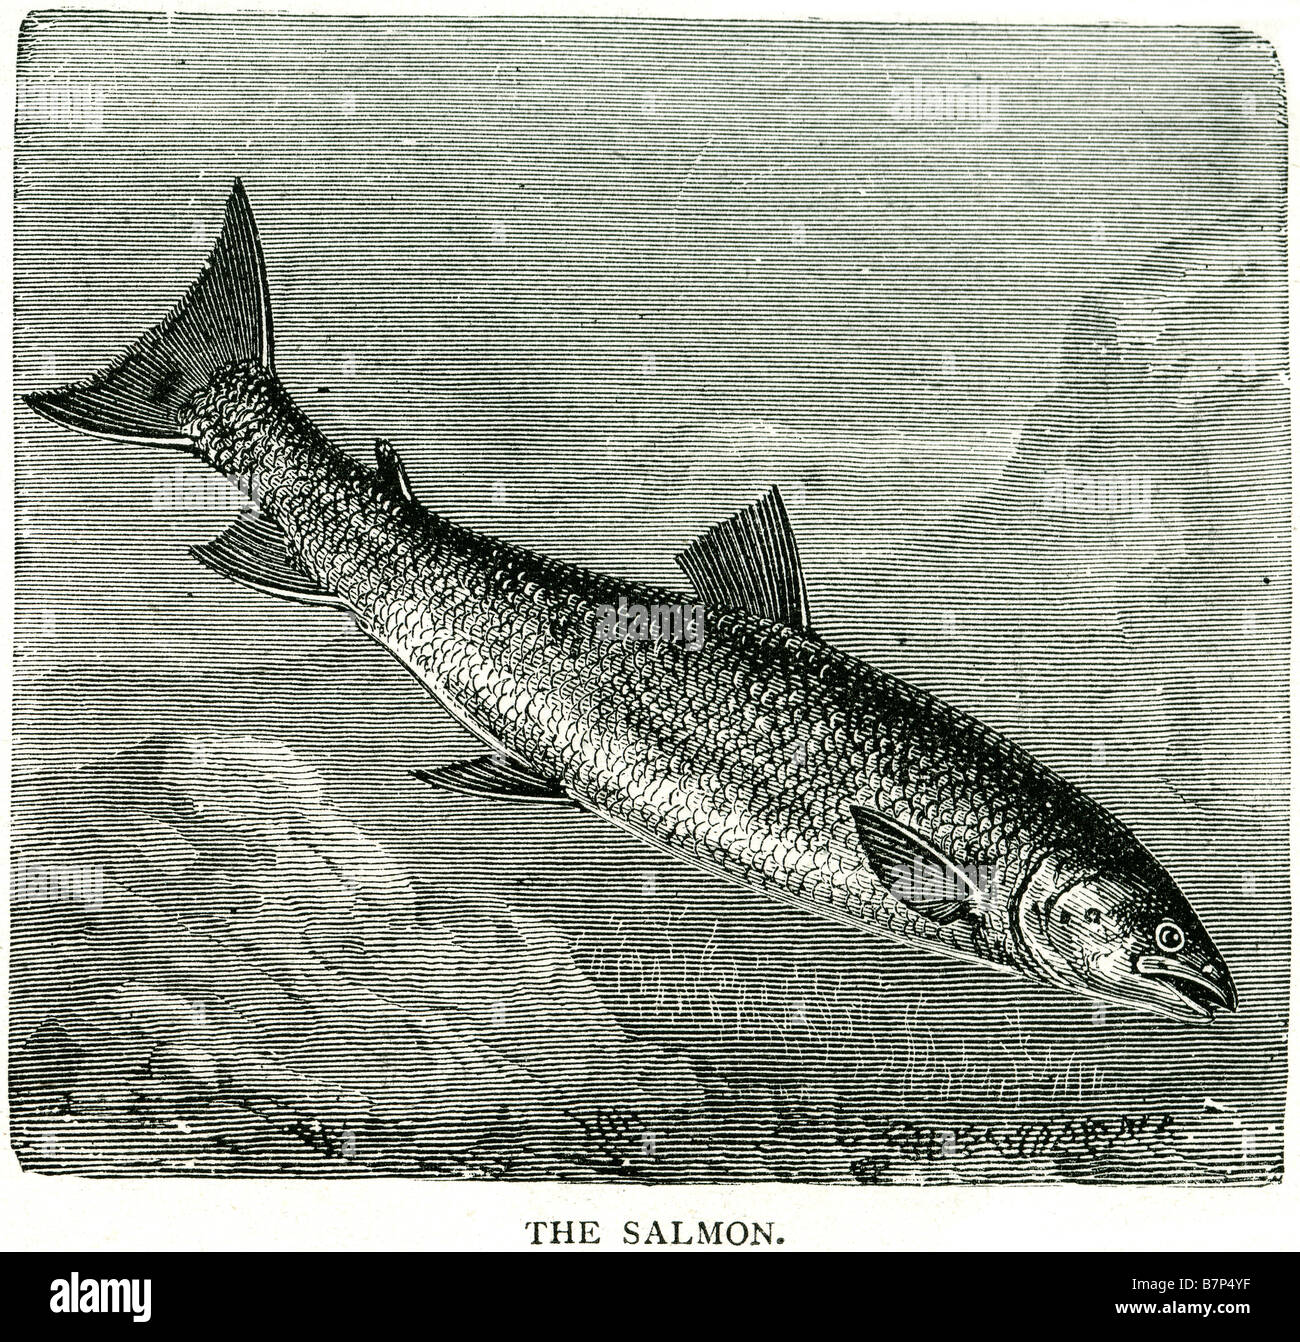 Les poissons salmonidés saumon rose du Pacifique de l'Atlantique anadrome de l'argent des Grands lacs, océans Banque D'Images